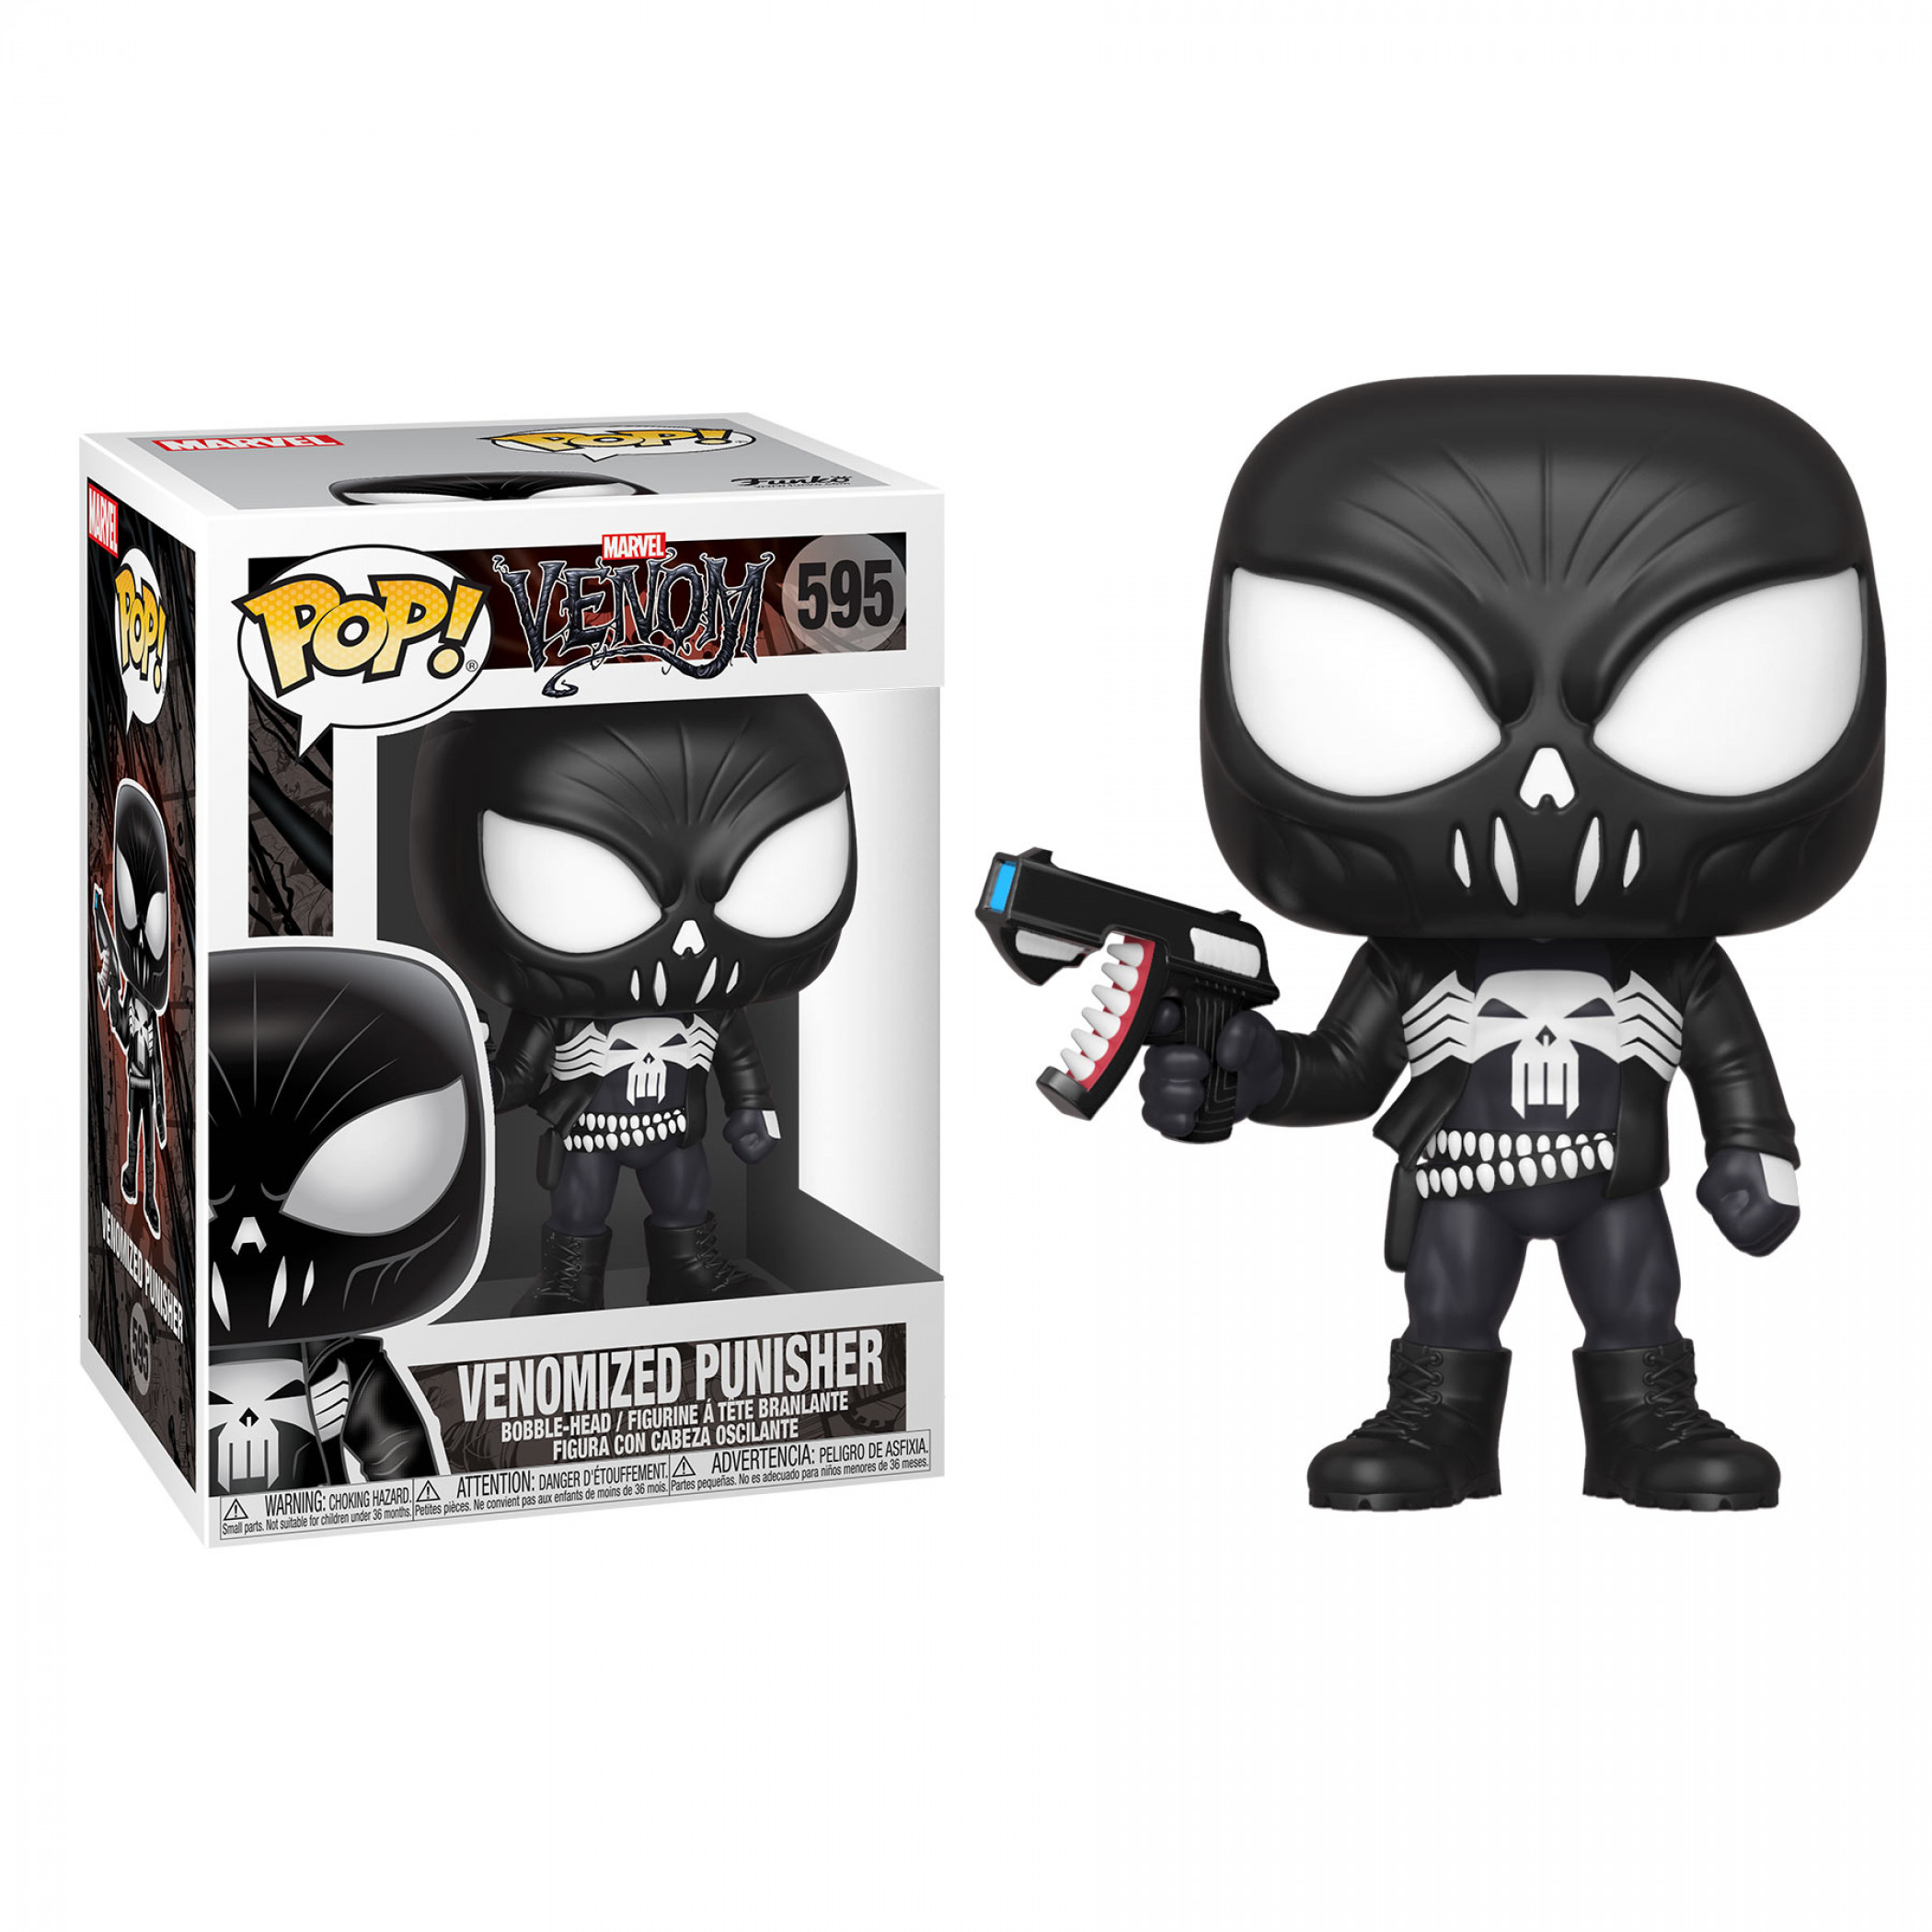 Venom and Punisher Mashup Funko Pop